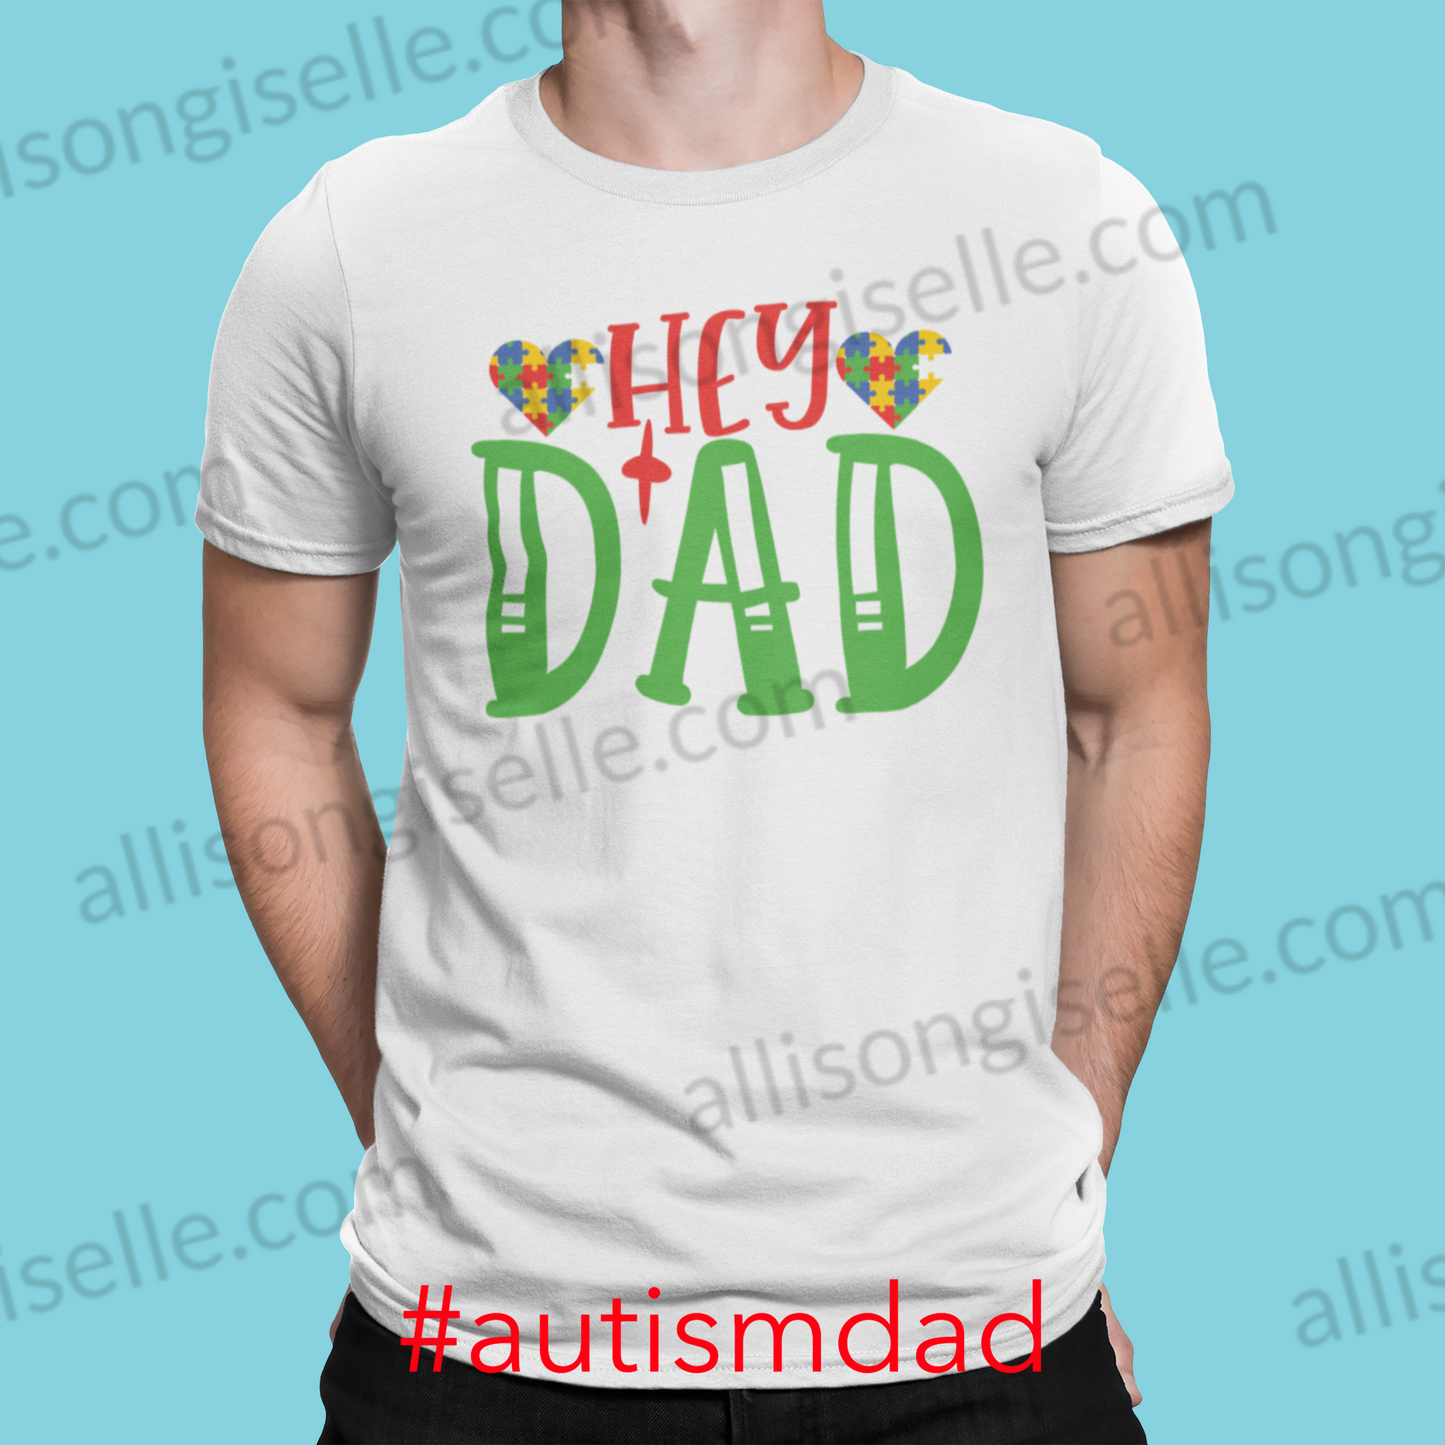 Hey Dad Autism Shirt, Adult Autism Awareness shirts, Autism Shirt Adult, Adult Autism Shirt, Autism Awareness Shirt Adult